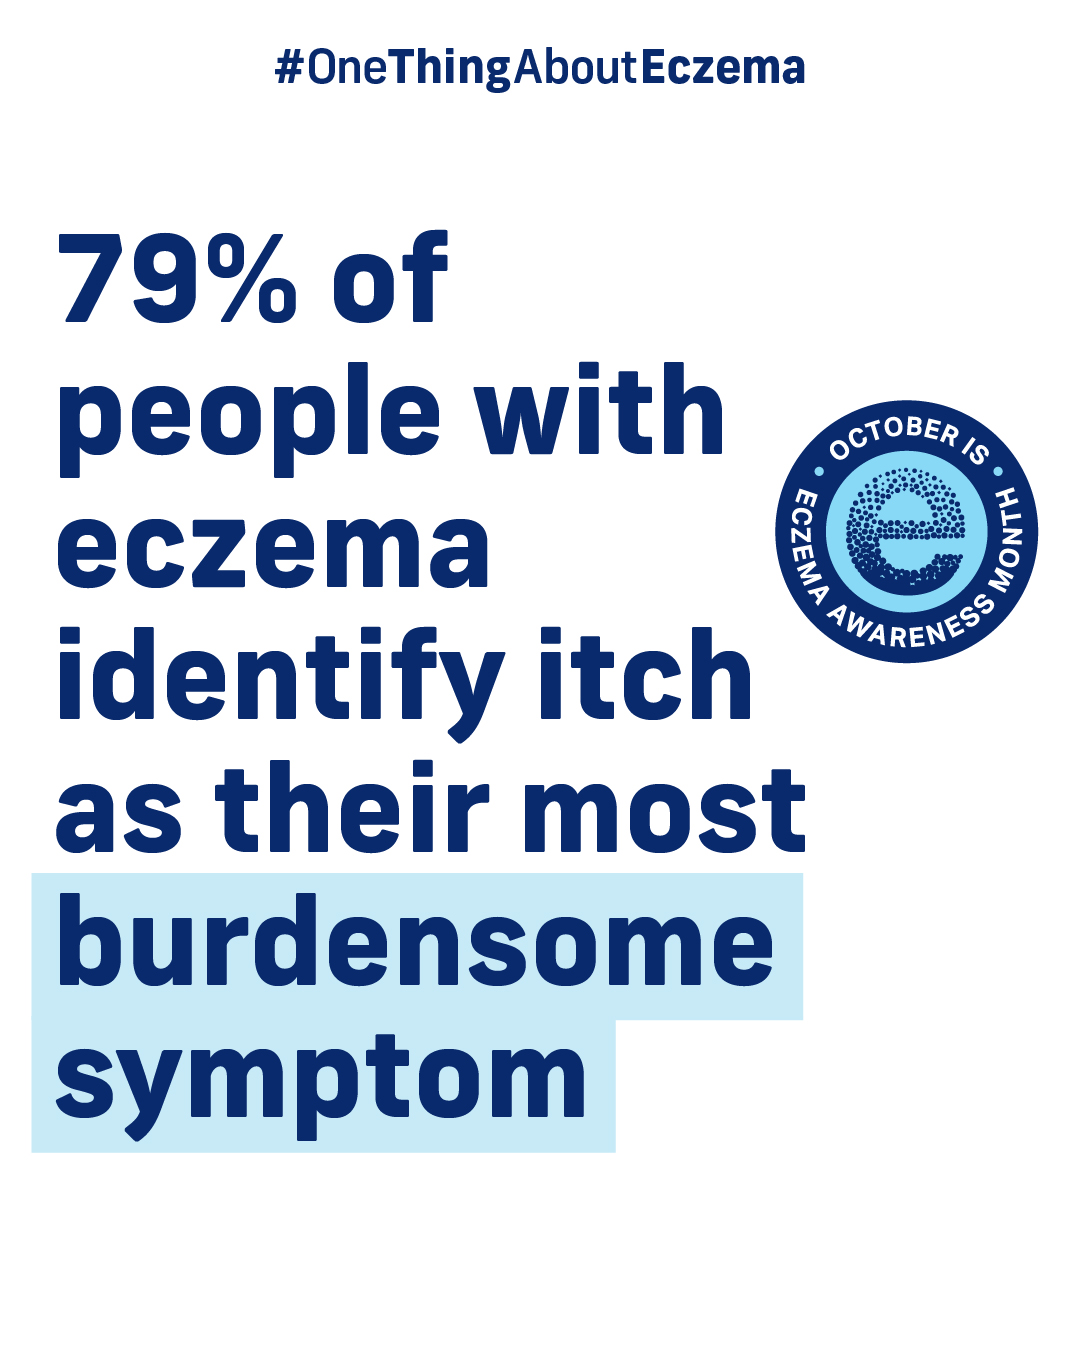 Itch as most burdensome eczema symptom